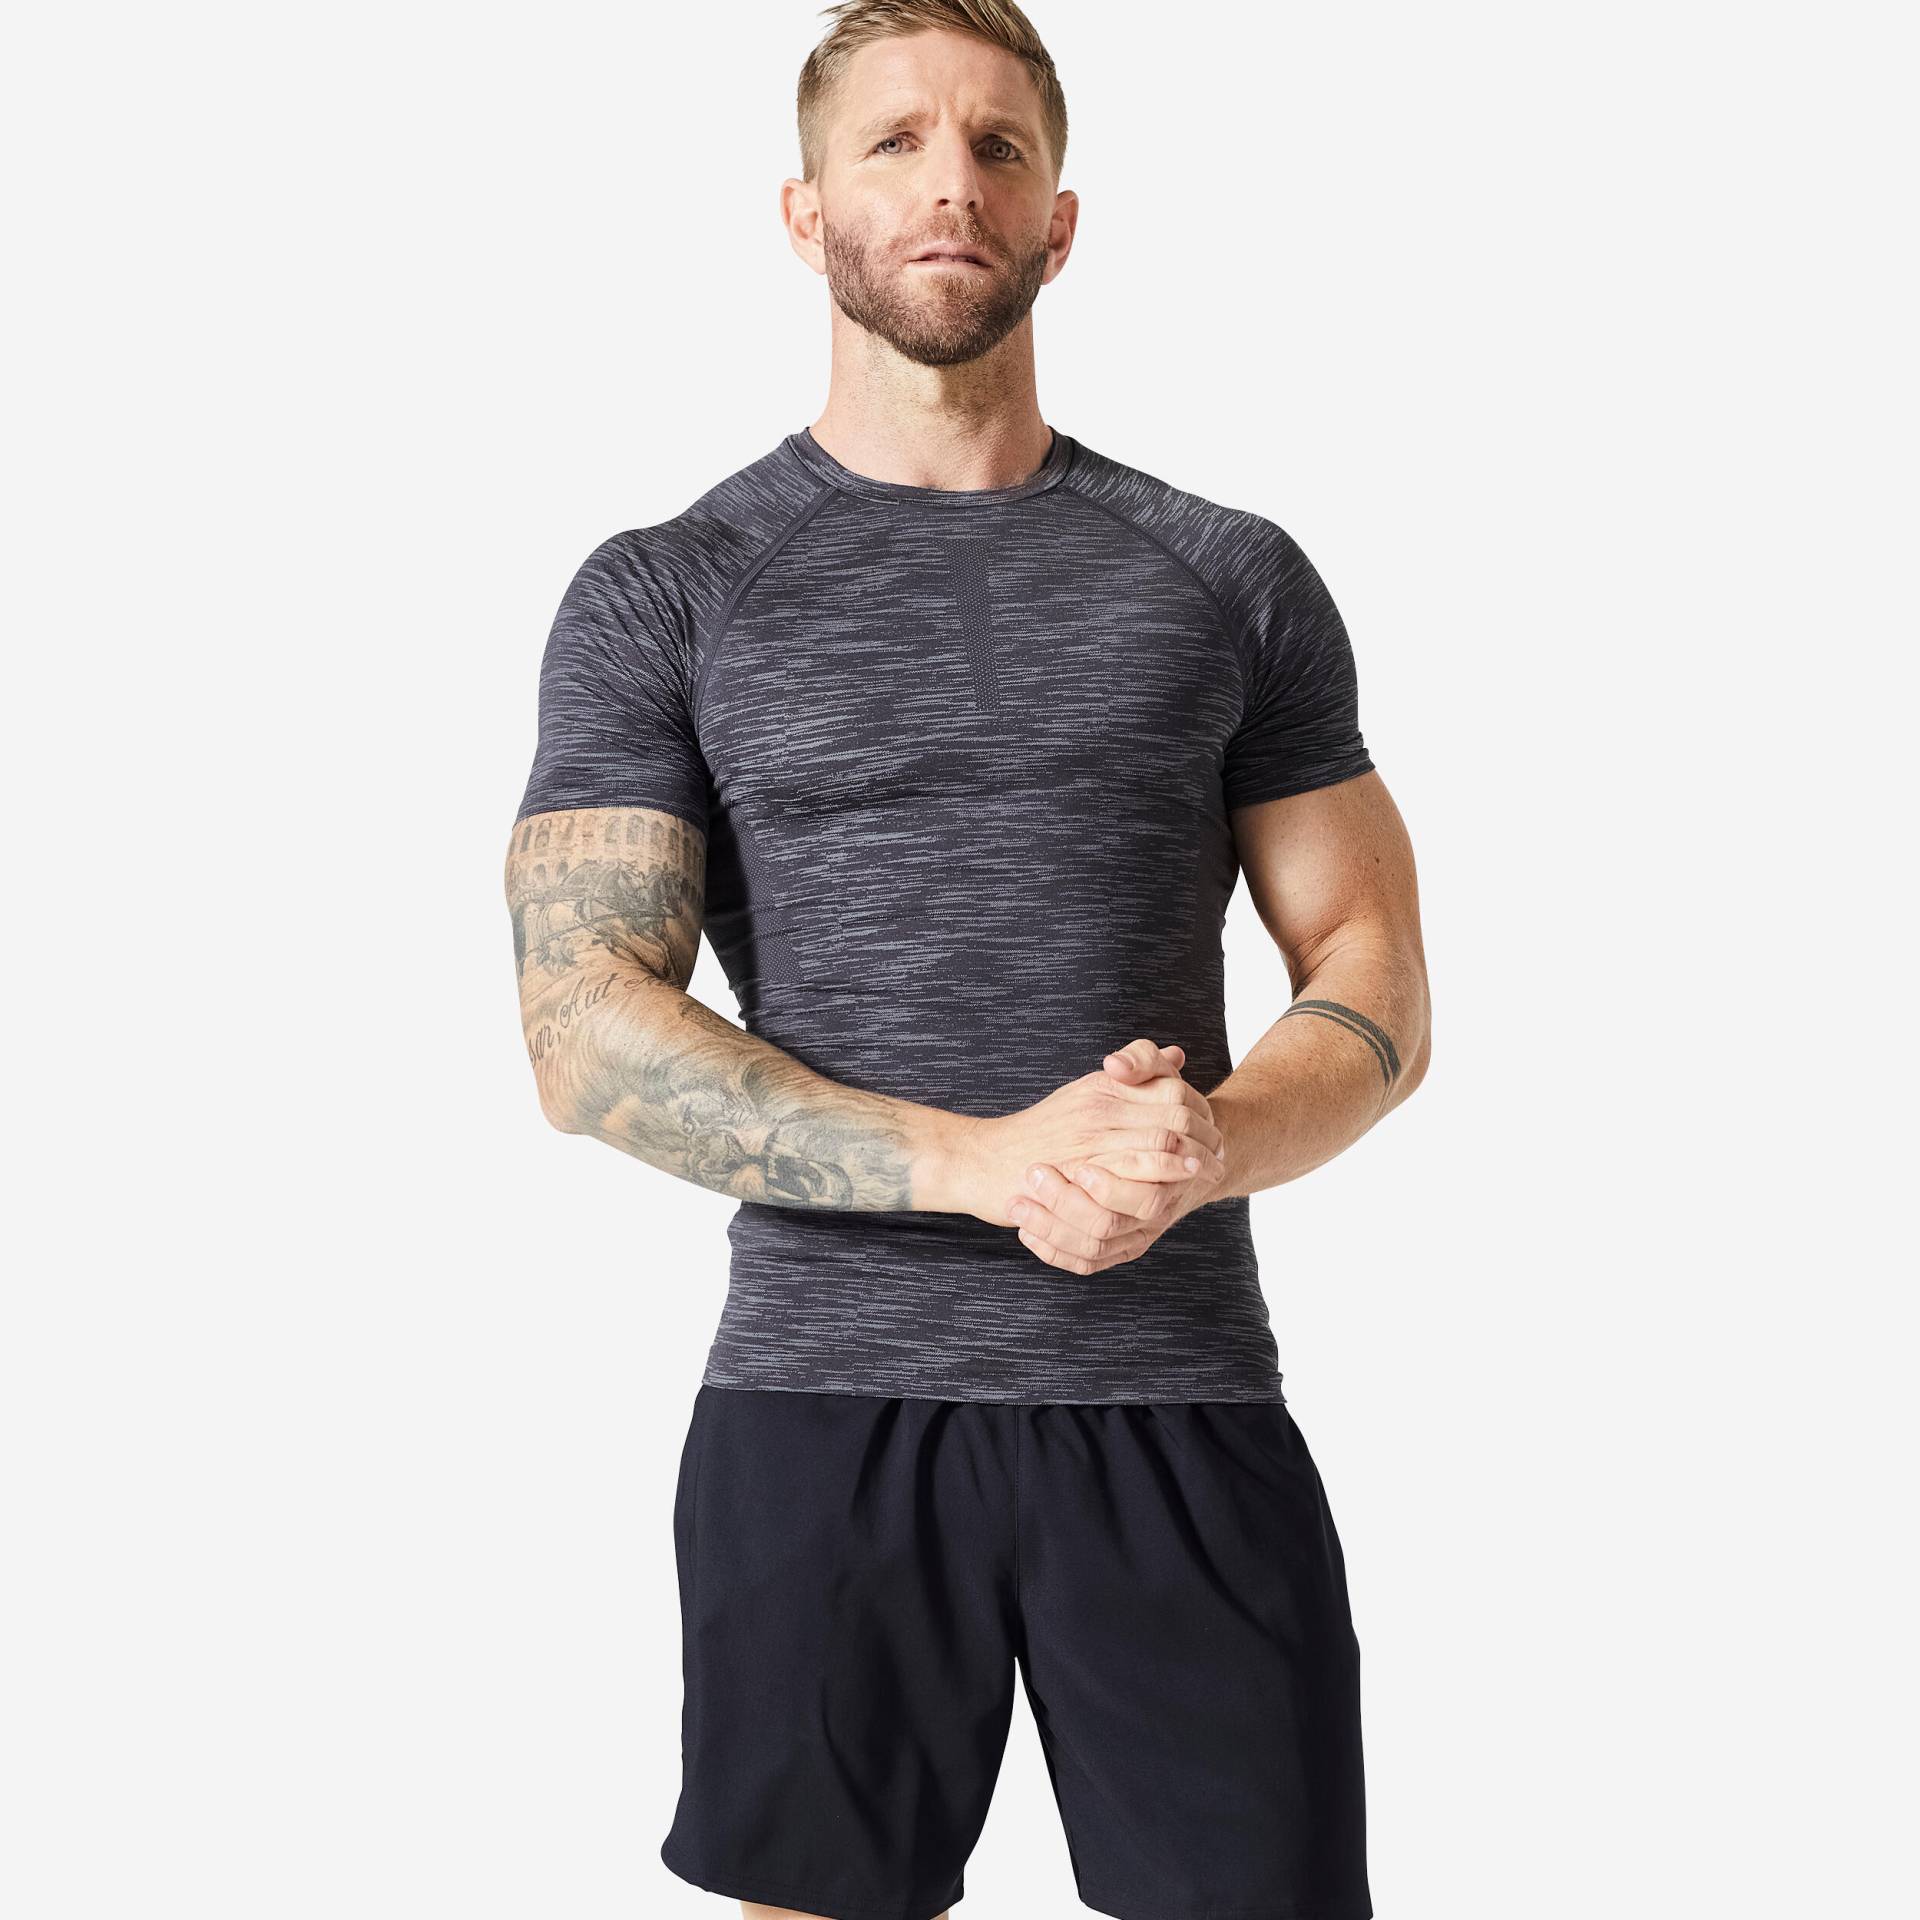 Kompressionsshirt Fitness Cardio - grau/schwarz meliert von Domyos